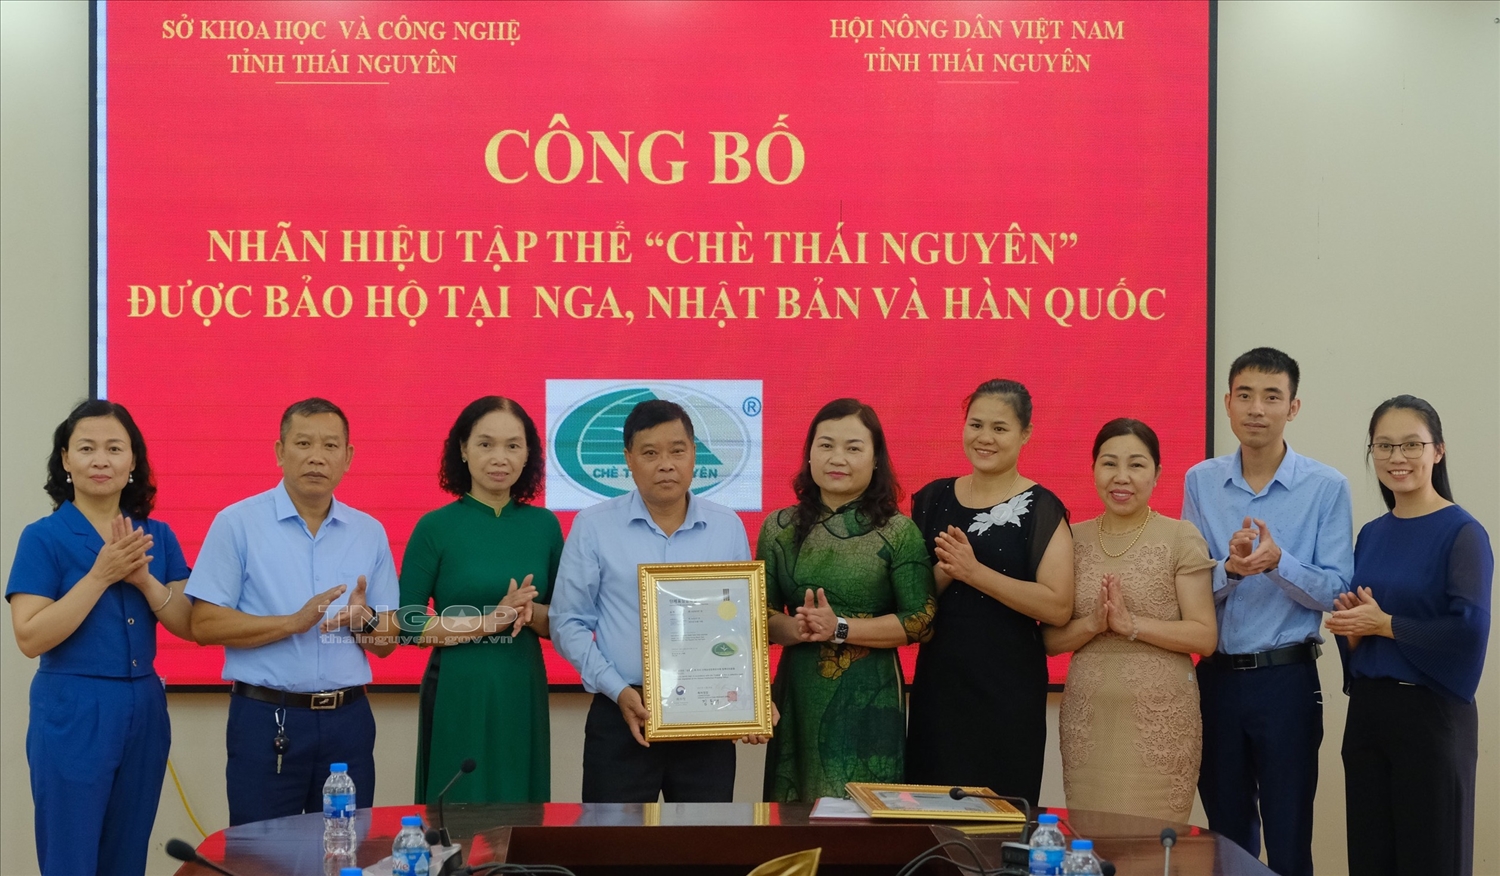 Đại diện Hội Nông dân tỉnh đón nhận Giấy chứng nhận đăng ký nhãn hiệu tập thể “Chè Thái Nguyên” tại Nga, Nhật Bản và Hàn Quốc.